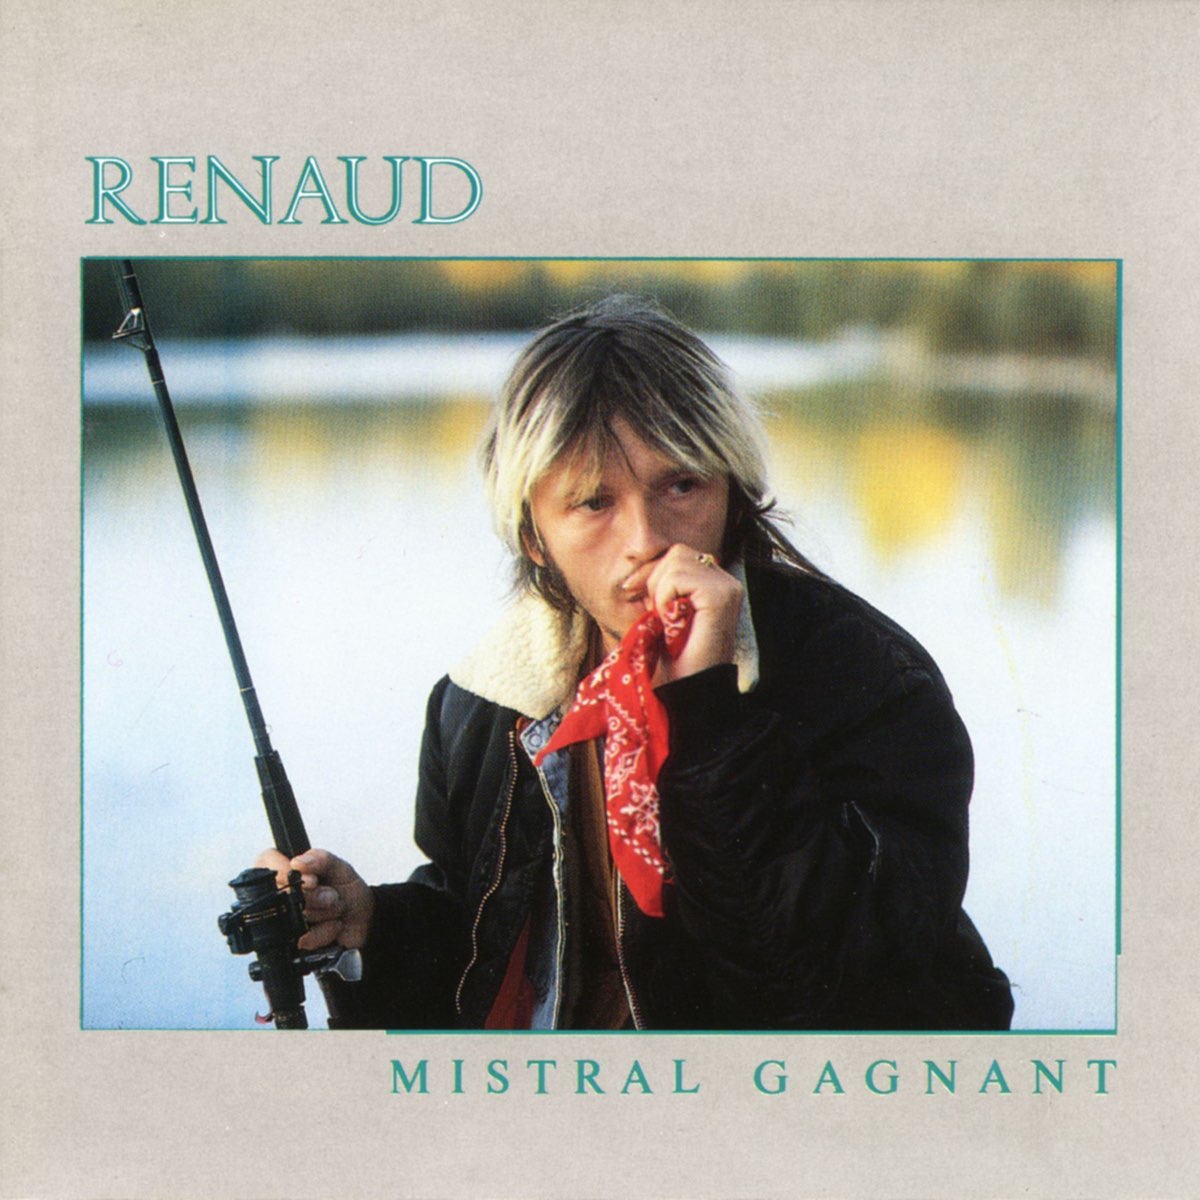 Mistral Gagnant par Renaud sur Apple Music